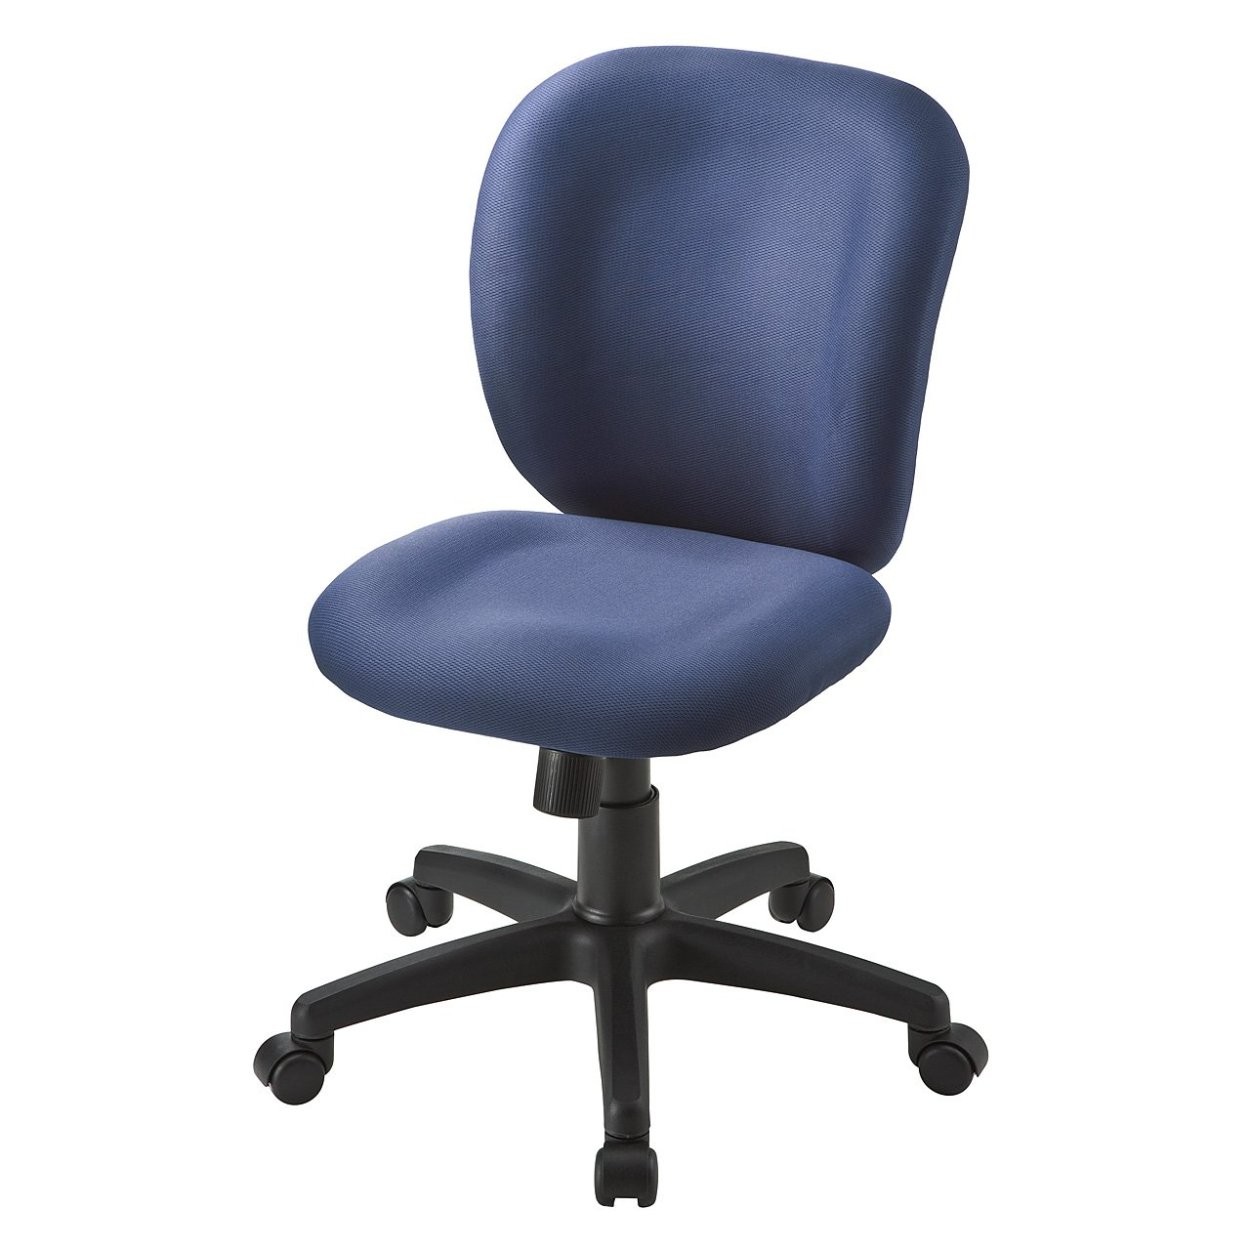 オフィスチェア パソコンチェア 事務椅子 学習椅子 オフィスチェアー デスクチェア チェア チェアー イス いす オフィス 低反発 疲れにくい  100-SNC031